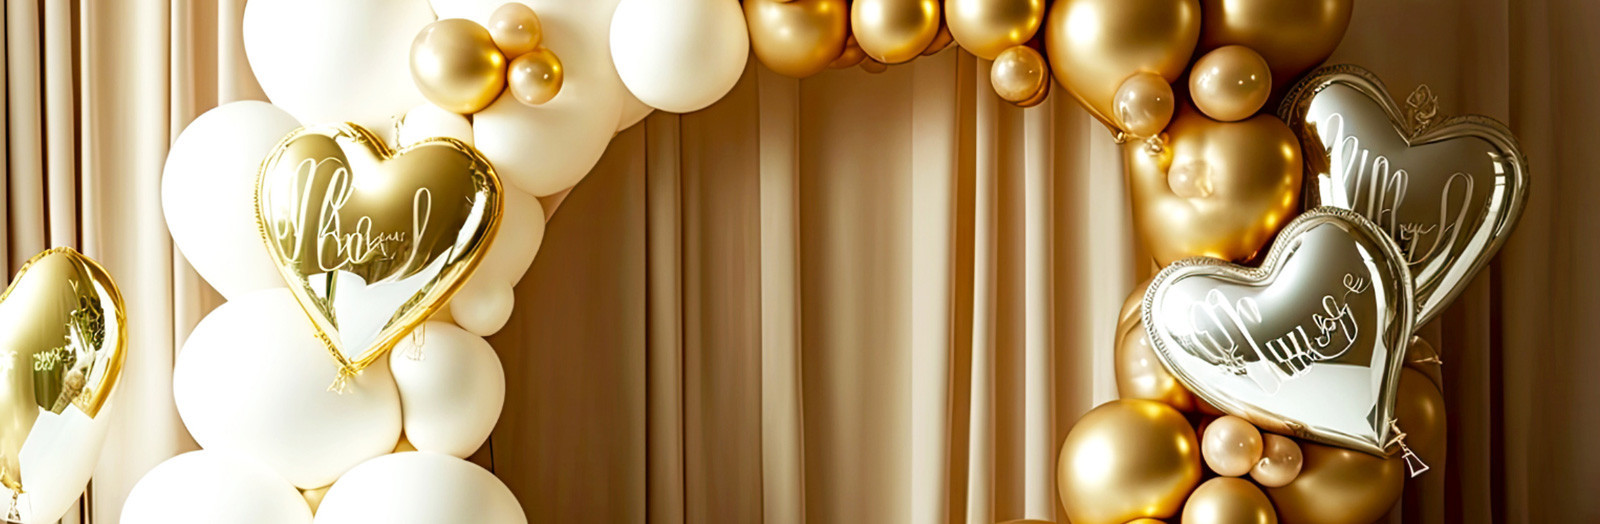 Créez une ambiance festive avec 25 ballons blancs de qualité pour toutes  vos occasions spéciales